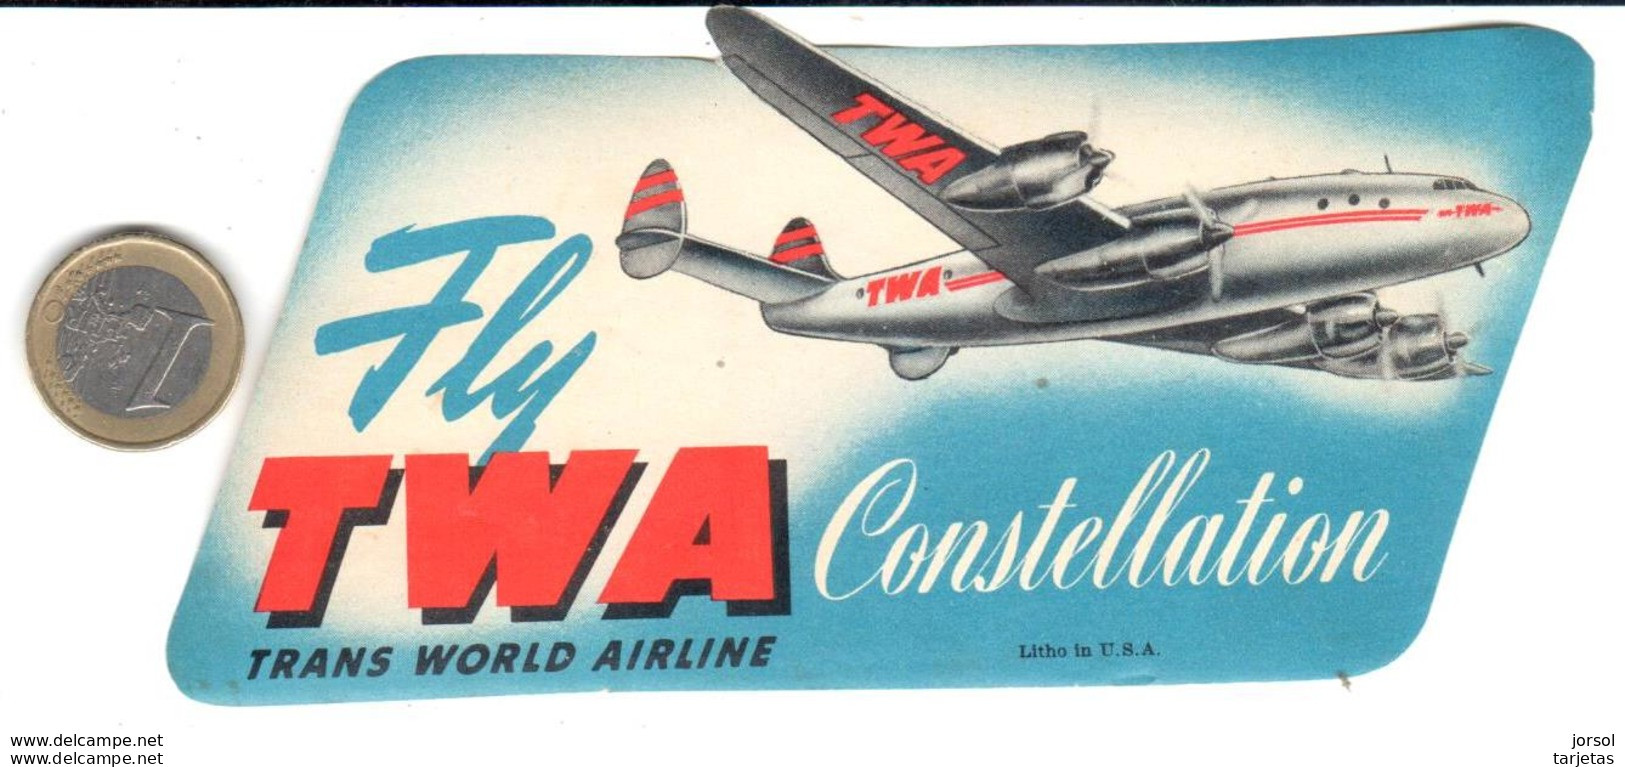 ETIQUETA DE AVION  - FLY TWA CONSTELLATION -TRANS WORLD AIRLINE - Étiquettes à Bagages